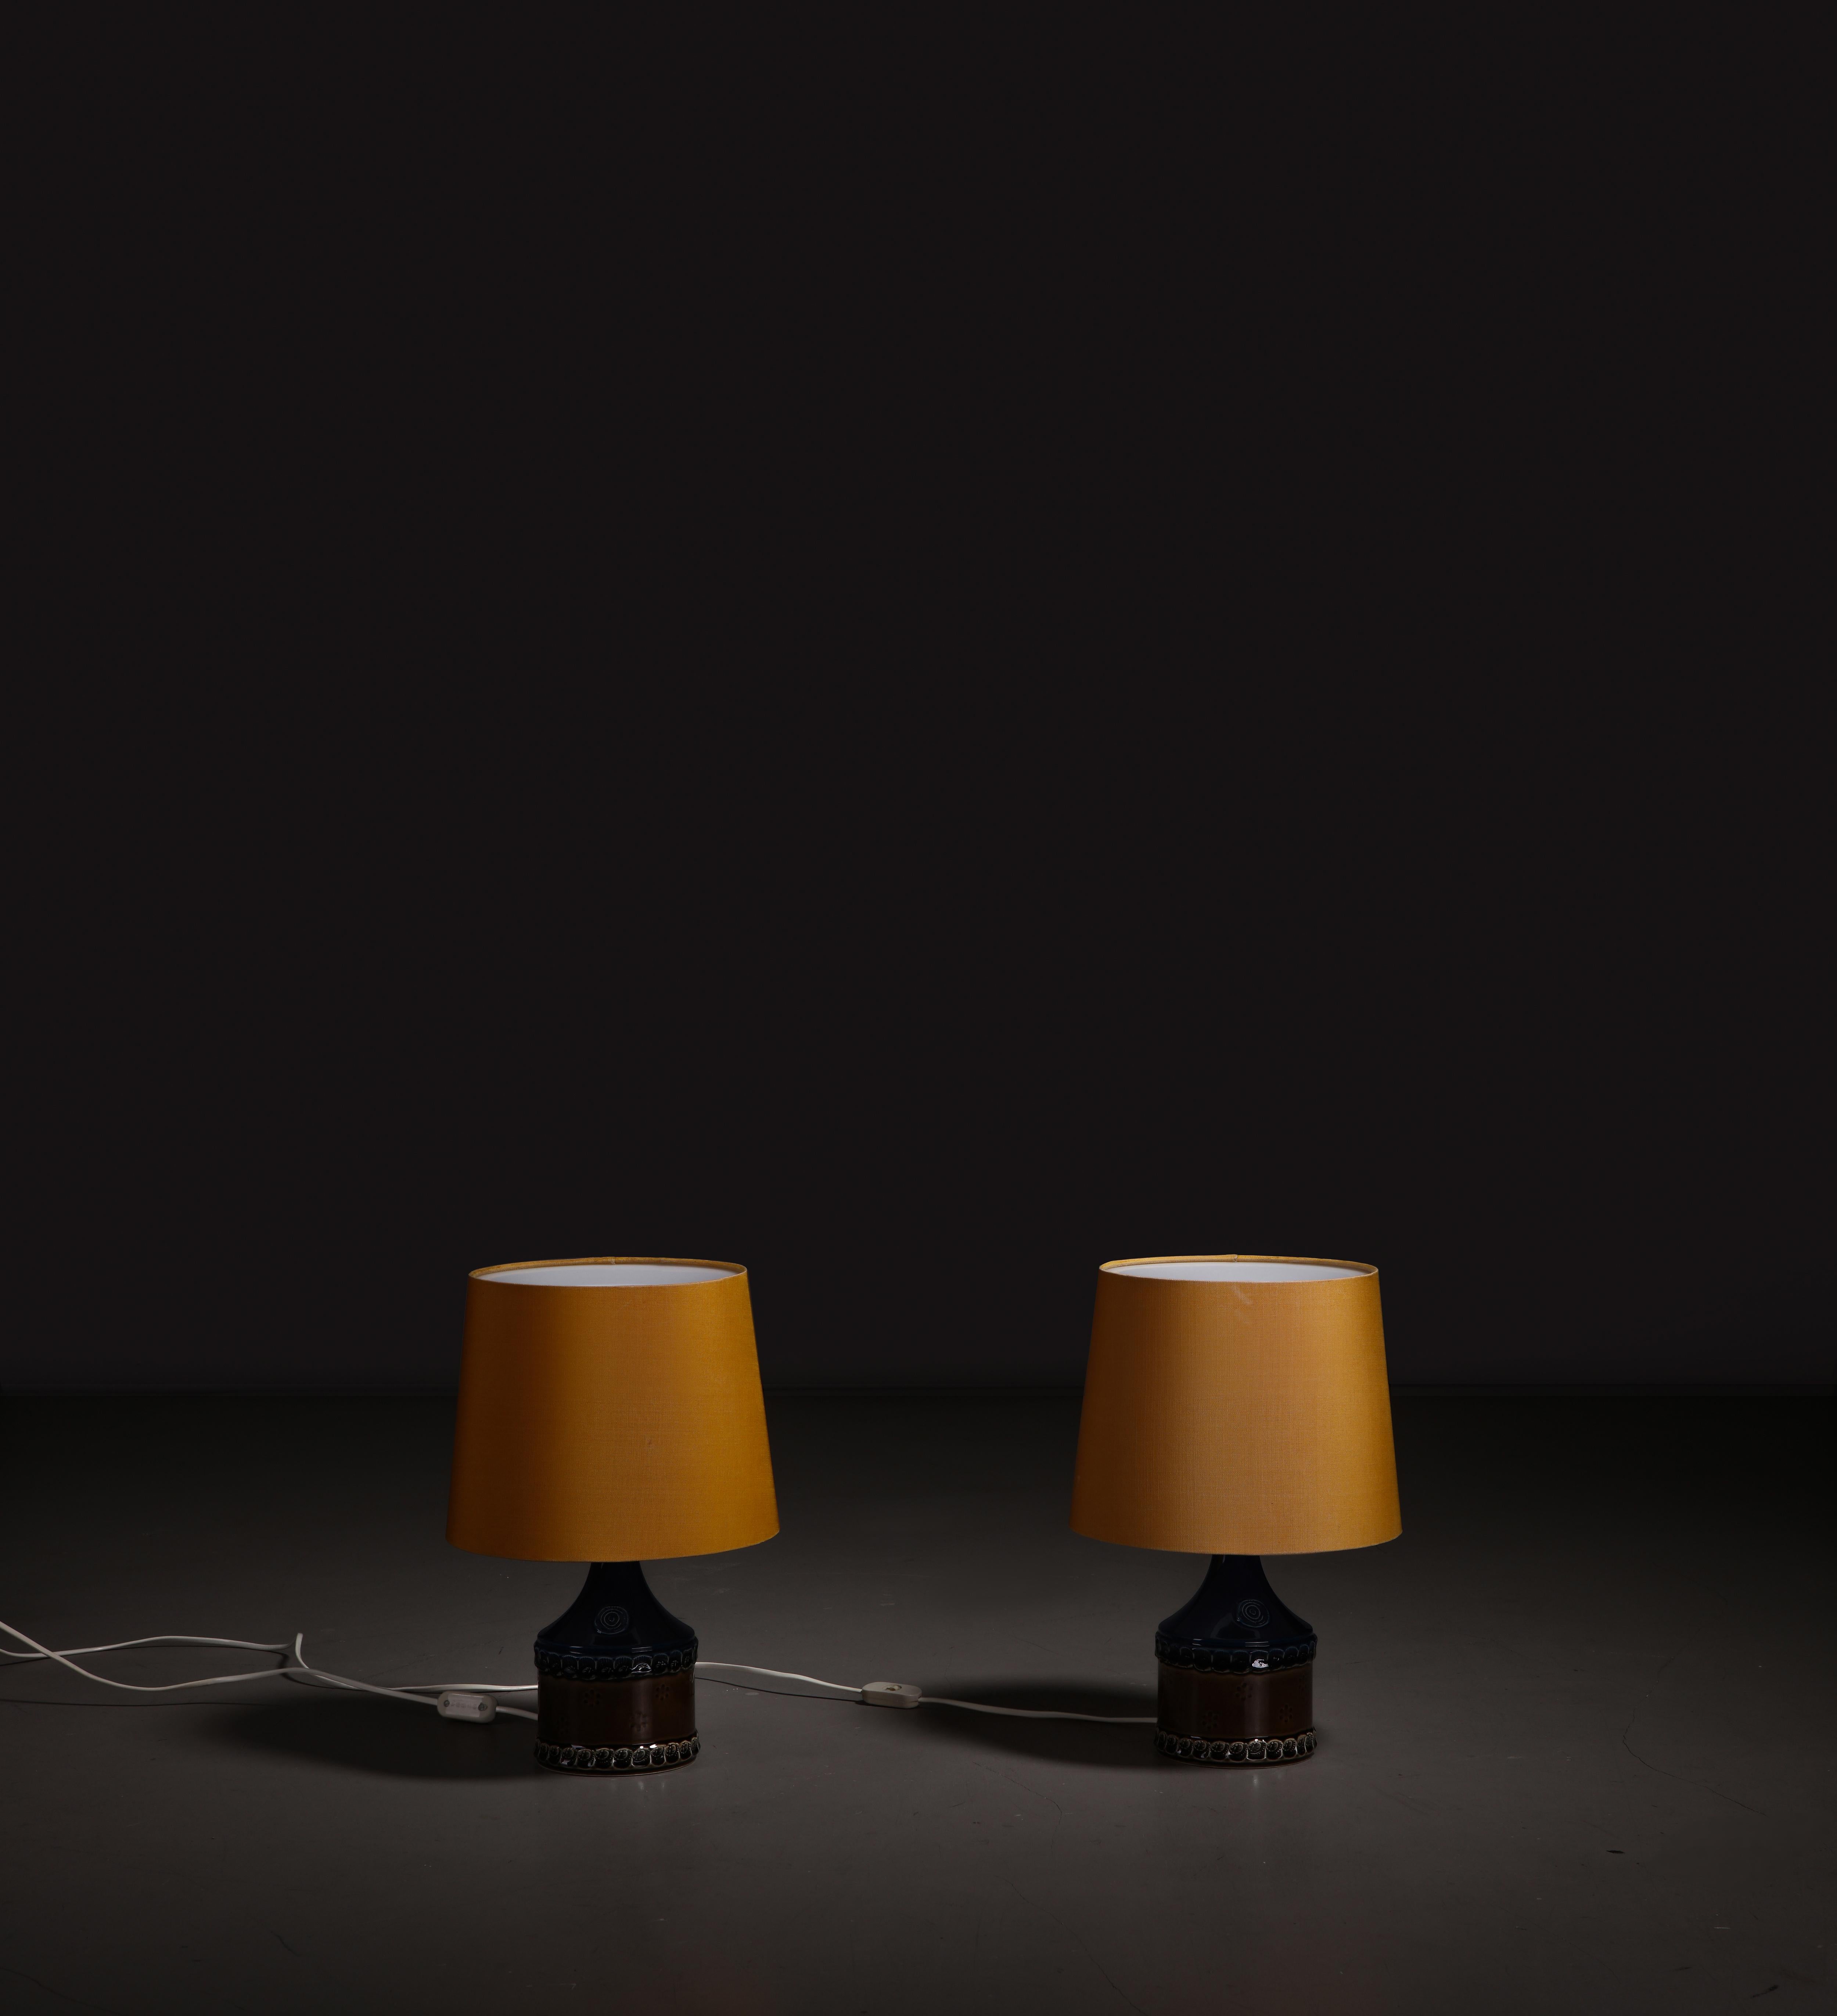 Ein Paar Porzellan-Tischlampen, entworfen von Bjørn Wiinblad und hergestellt von Rosenthal, Deutschland, 1960er Jahre.

Dieses Paar seltener Porzellan-Tischlampen ist ein echtes Zeugnis für die zeitlose Eleganz des Designs der Jahrhundertmitte.